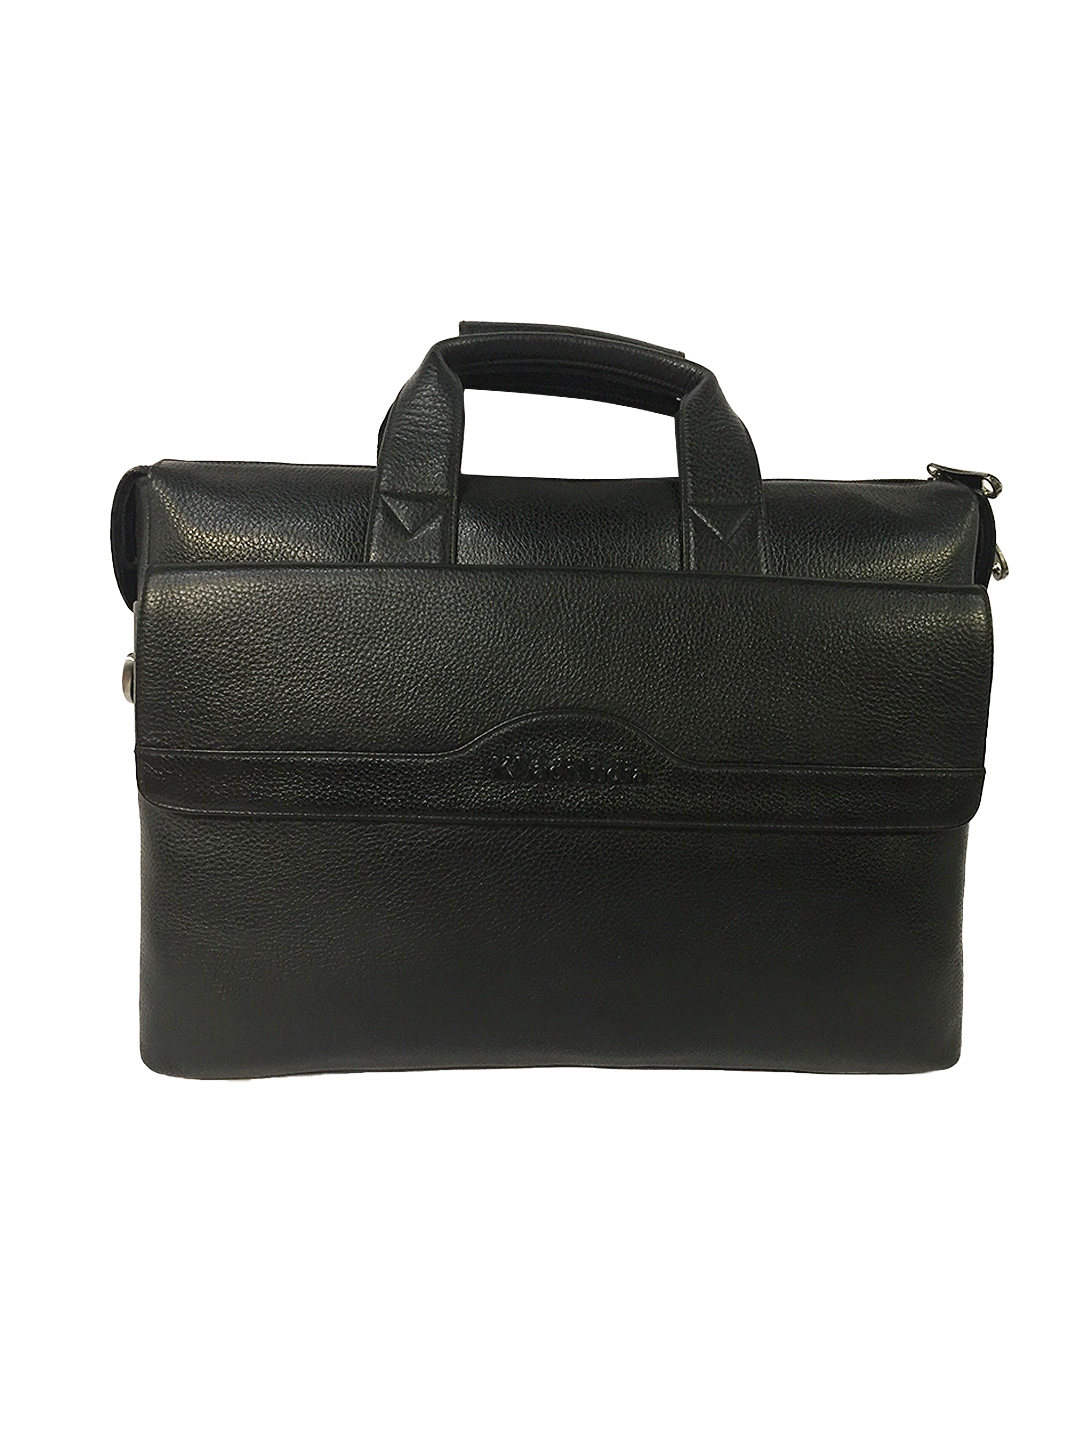 Genuine Leather Laptop Bag for Men-Office Bag for Men, Black colour-Laptop Messenger Bag -Rs7600